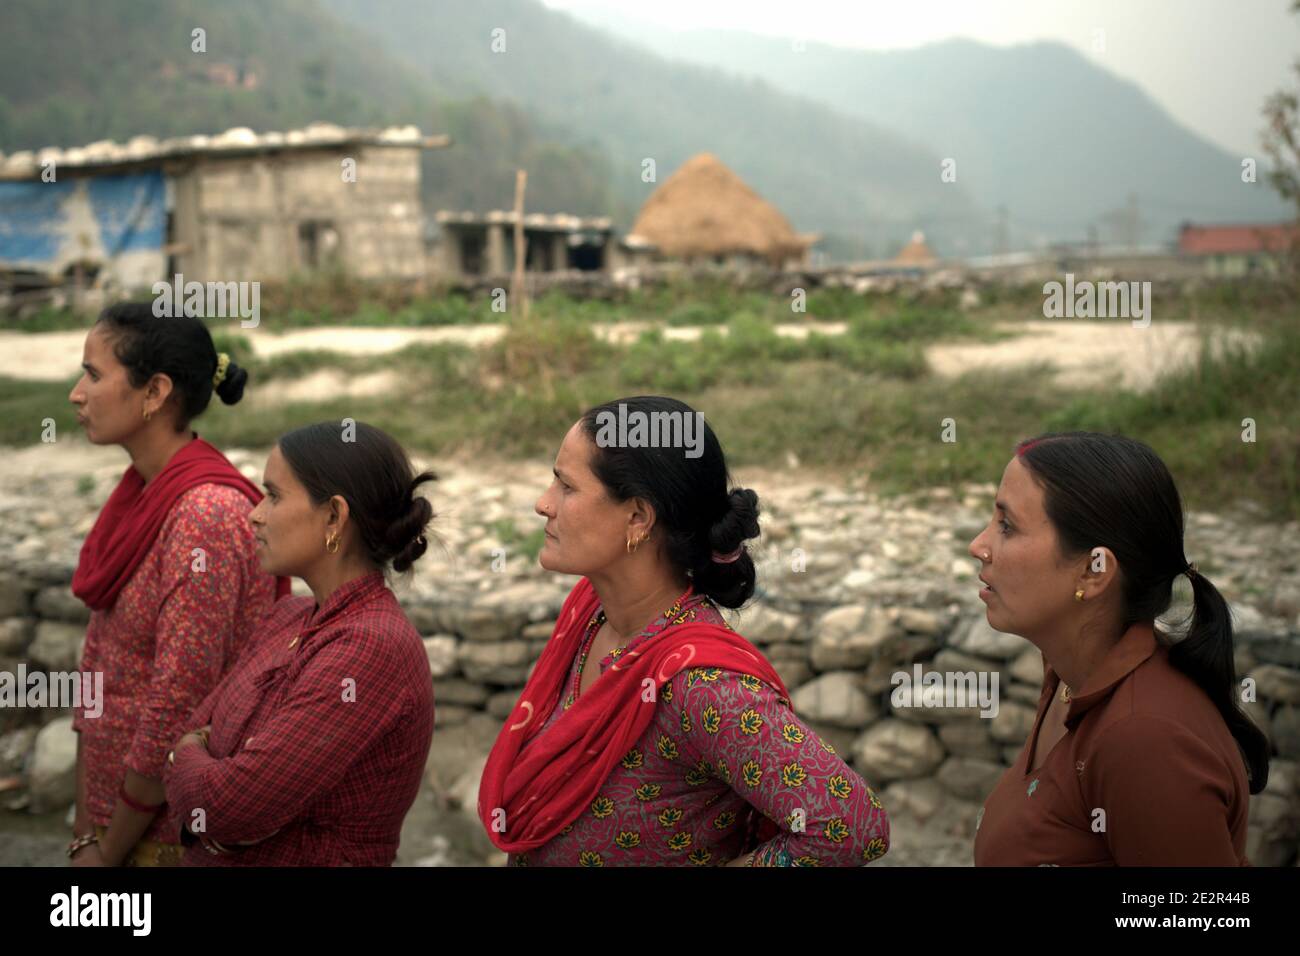 Ritratto di donne, abitanti di Khahare, in quanto si trovano vicino a un muro di gabione sul lato della pianura alluvionale di Harpan Khola nel distretto di Kaski, Gandaki, Nepal. Queste donne sono sopravvissute alle inondazioni e alle frane causate dalle piogge torrenziali nella zona di Bhaudare Tamagi, pochi mesi dopo i terremoti del 2015 (aprile-maggio 2015) in Nepal. Foto Stock